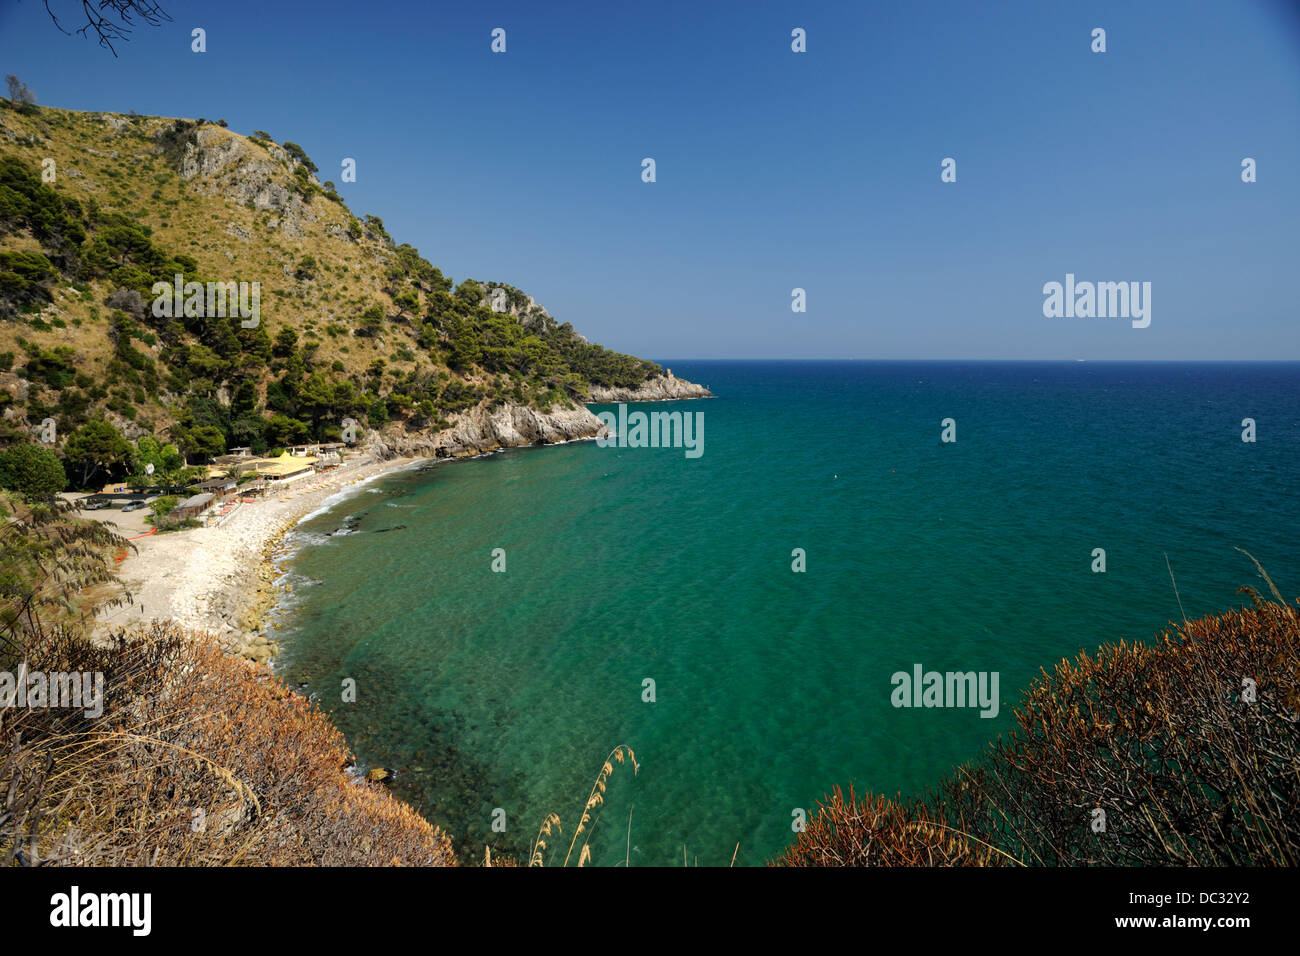 Italy, Lazio, coastline, Parco regionale Riviera di Ulisse Stock Photo